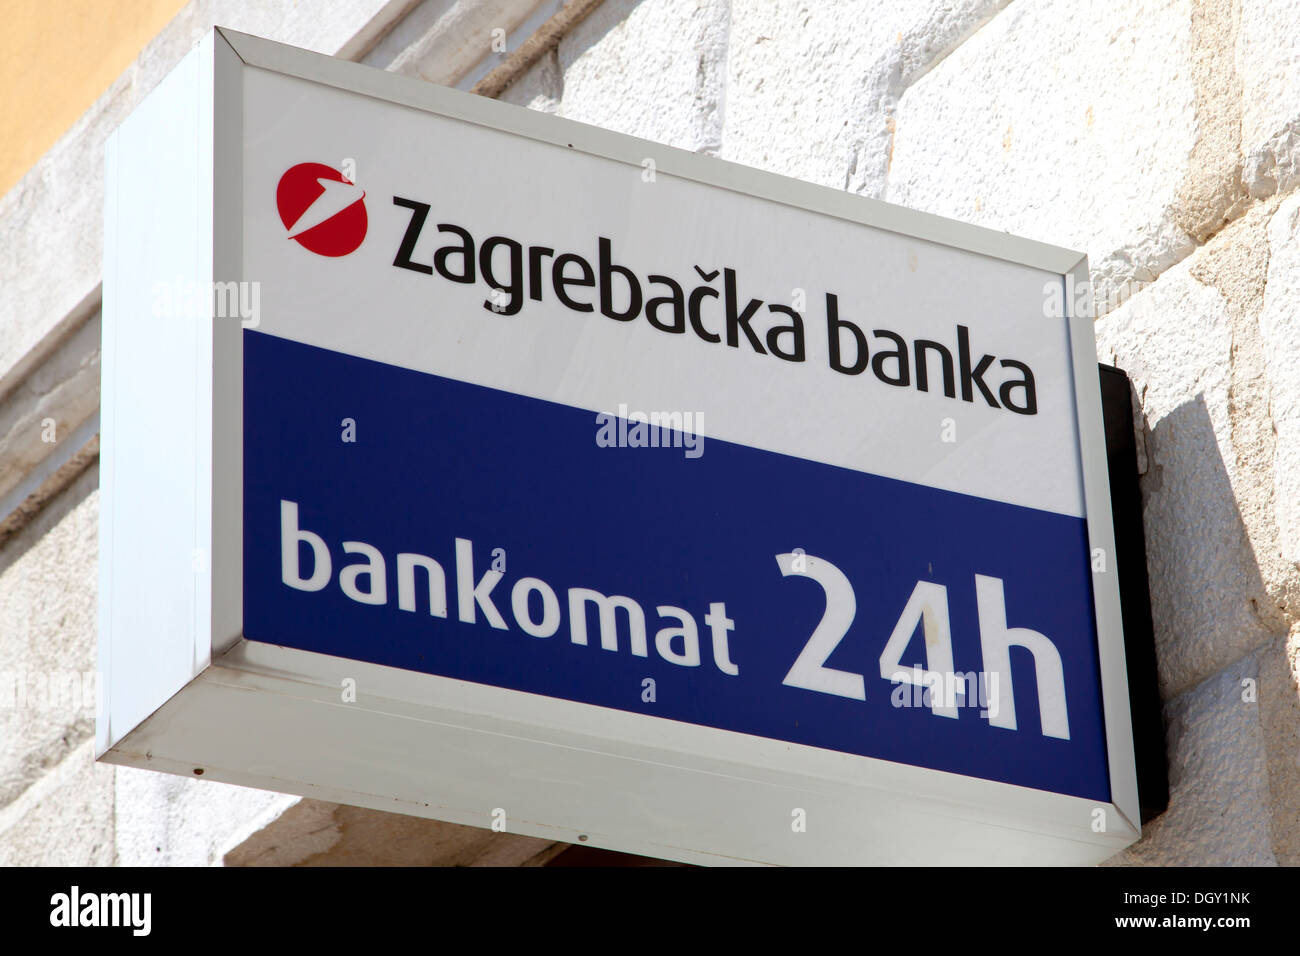 Zagrebacka banka logotipo, carteles en una sucursal de Zagrebacka banka, parte del grupo UNICREDITO, en Rovinj, Istria, Croacia, Rovingo Foto de stock